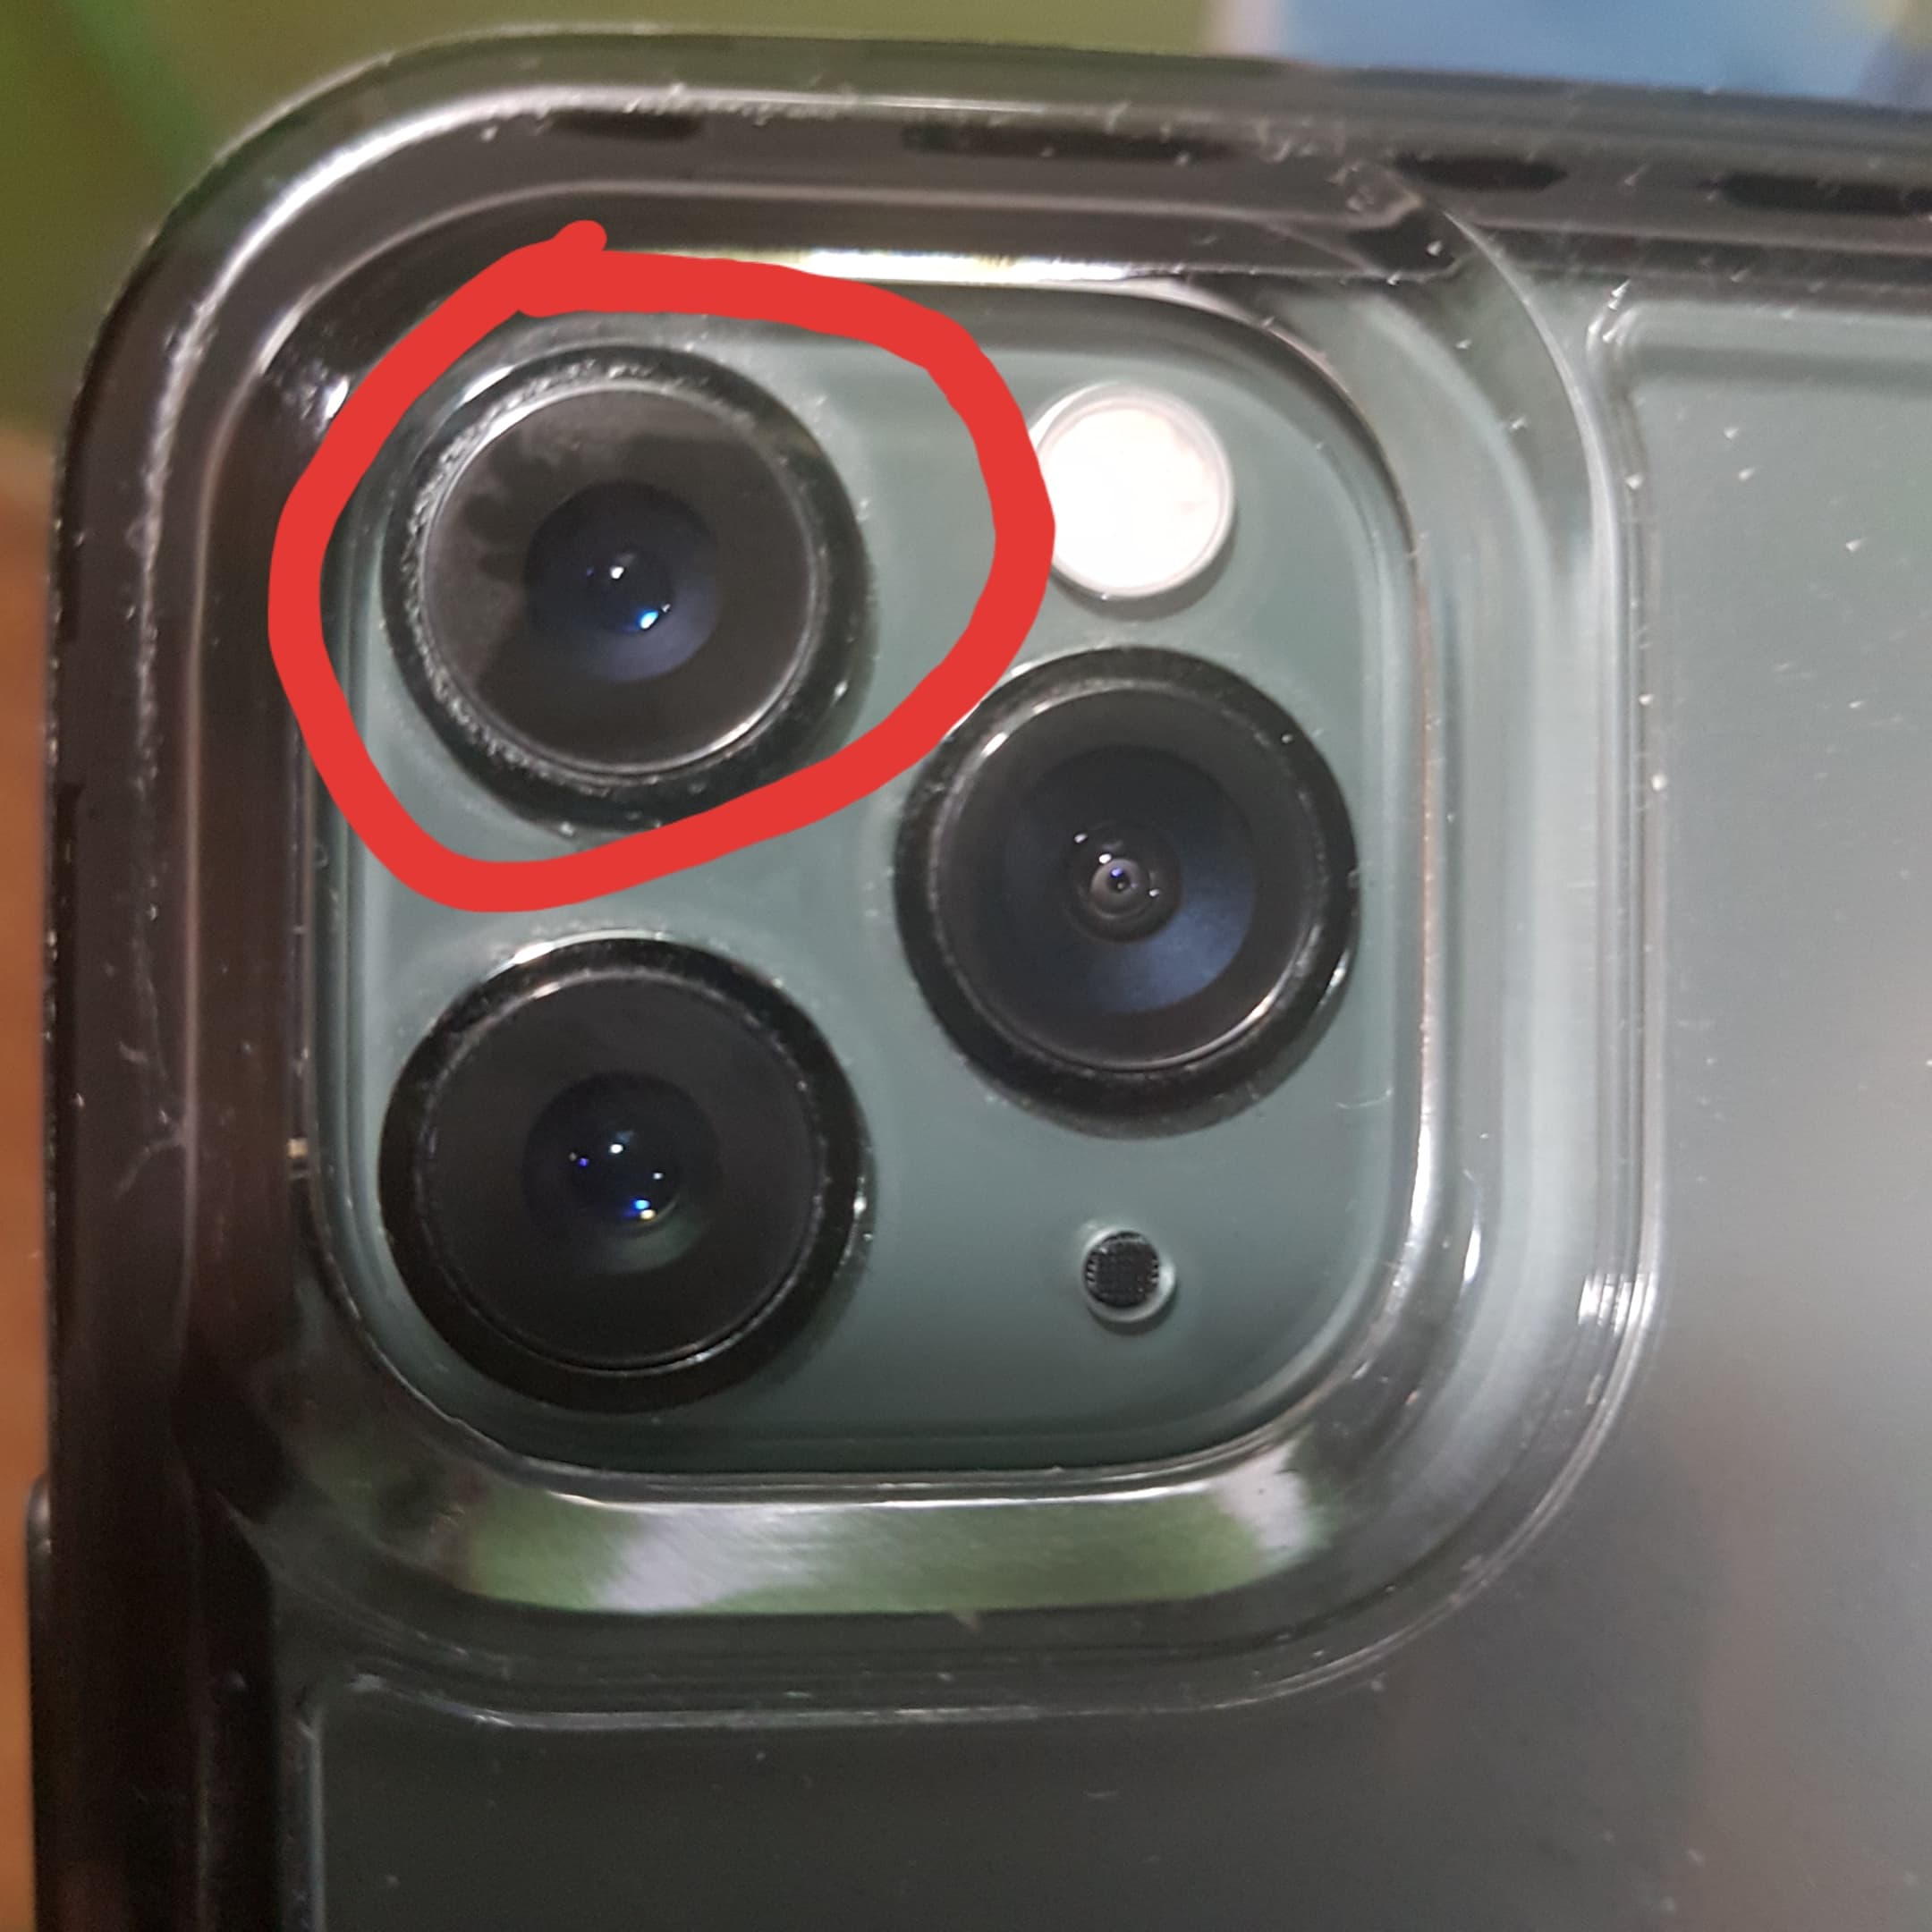 Do iPhone cameras scratch easy?